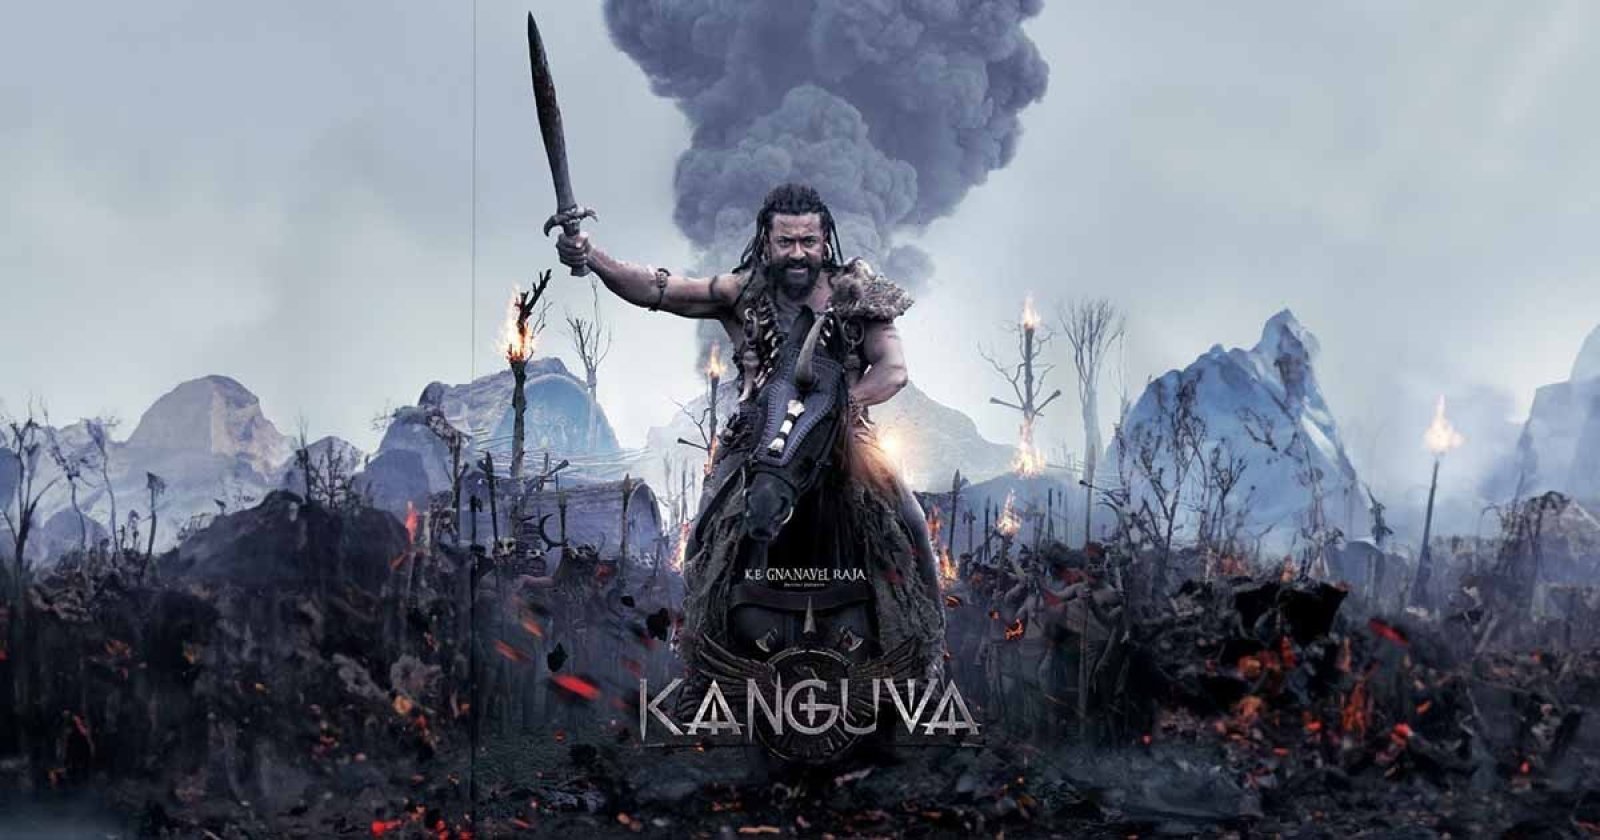 सूर्या ने मैग्नम ओपस फिल्म 'कंगुवा' में अपने हिस्से की शूटिंग की पूरी